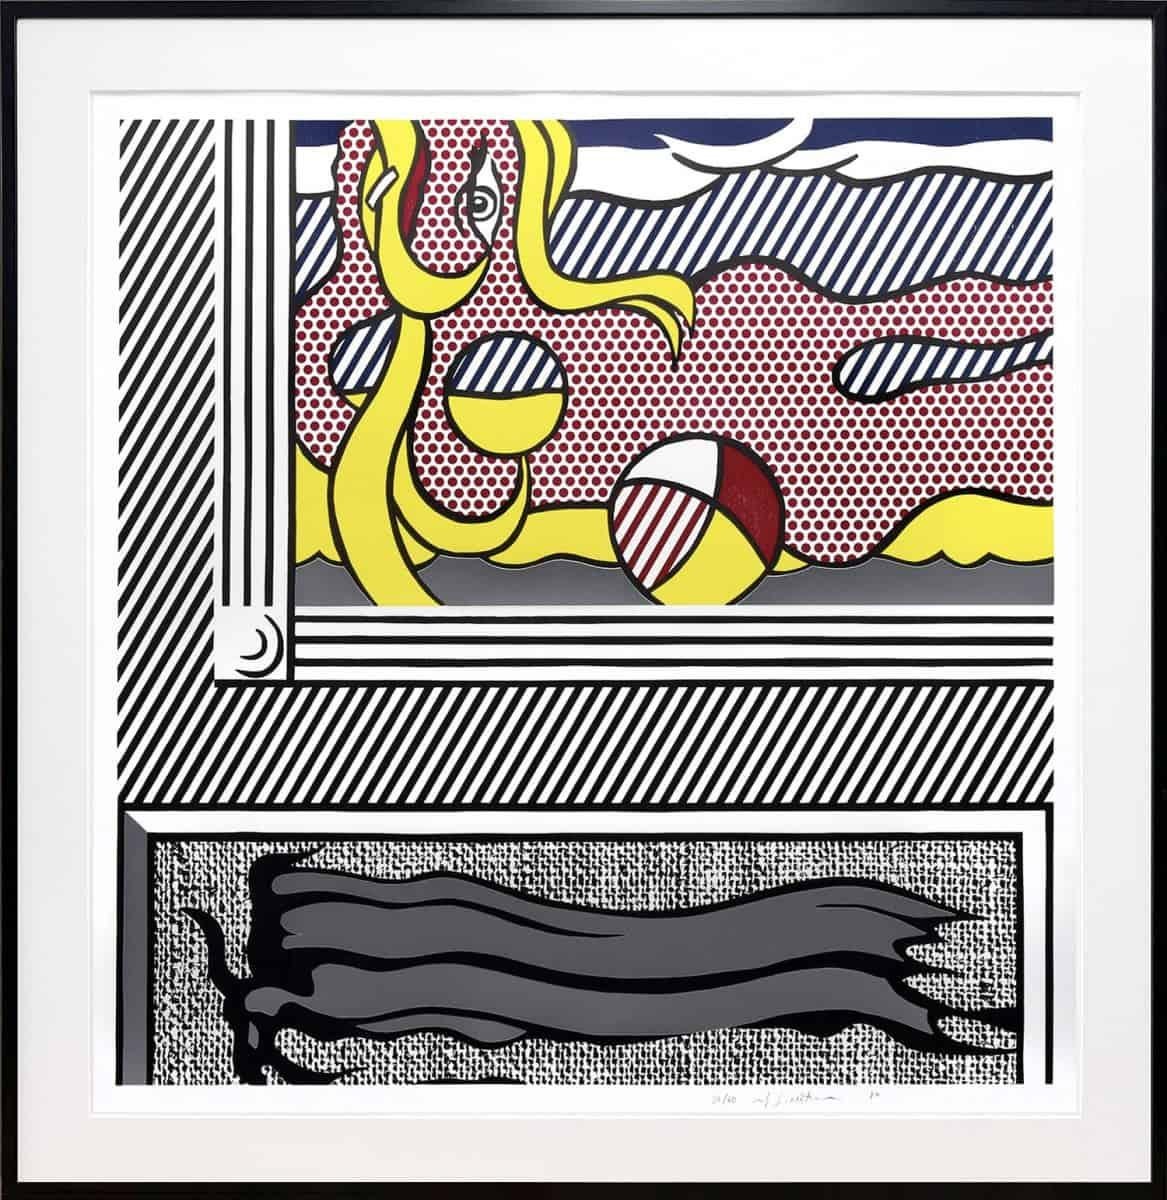 Deux peintures : Paire de boules de plage, de la série Paintings - Print de Roy Lichtenstein